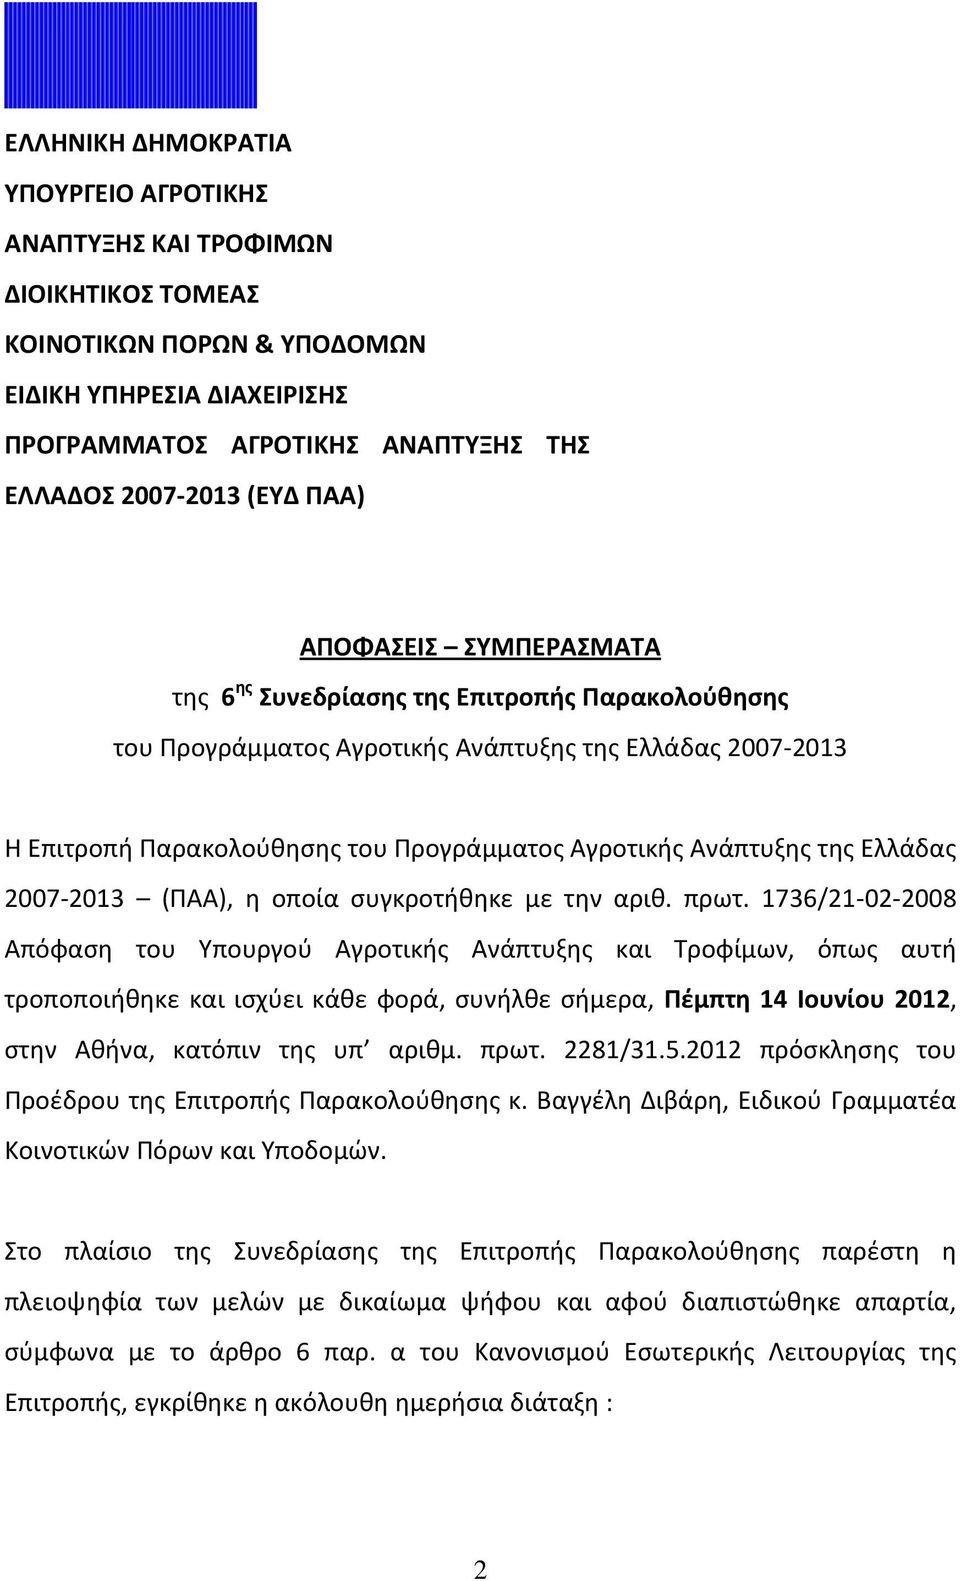 της Ελλάδας 2007-2013 (ΠΑΑ), η οποία συγκροτήθηκε με την αριθ. πρωτ.